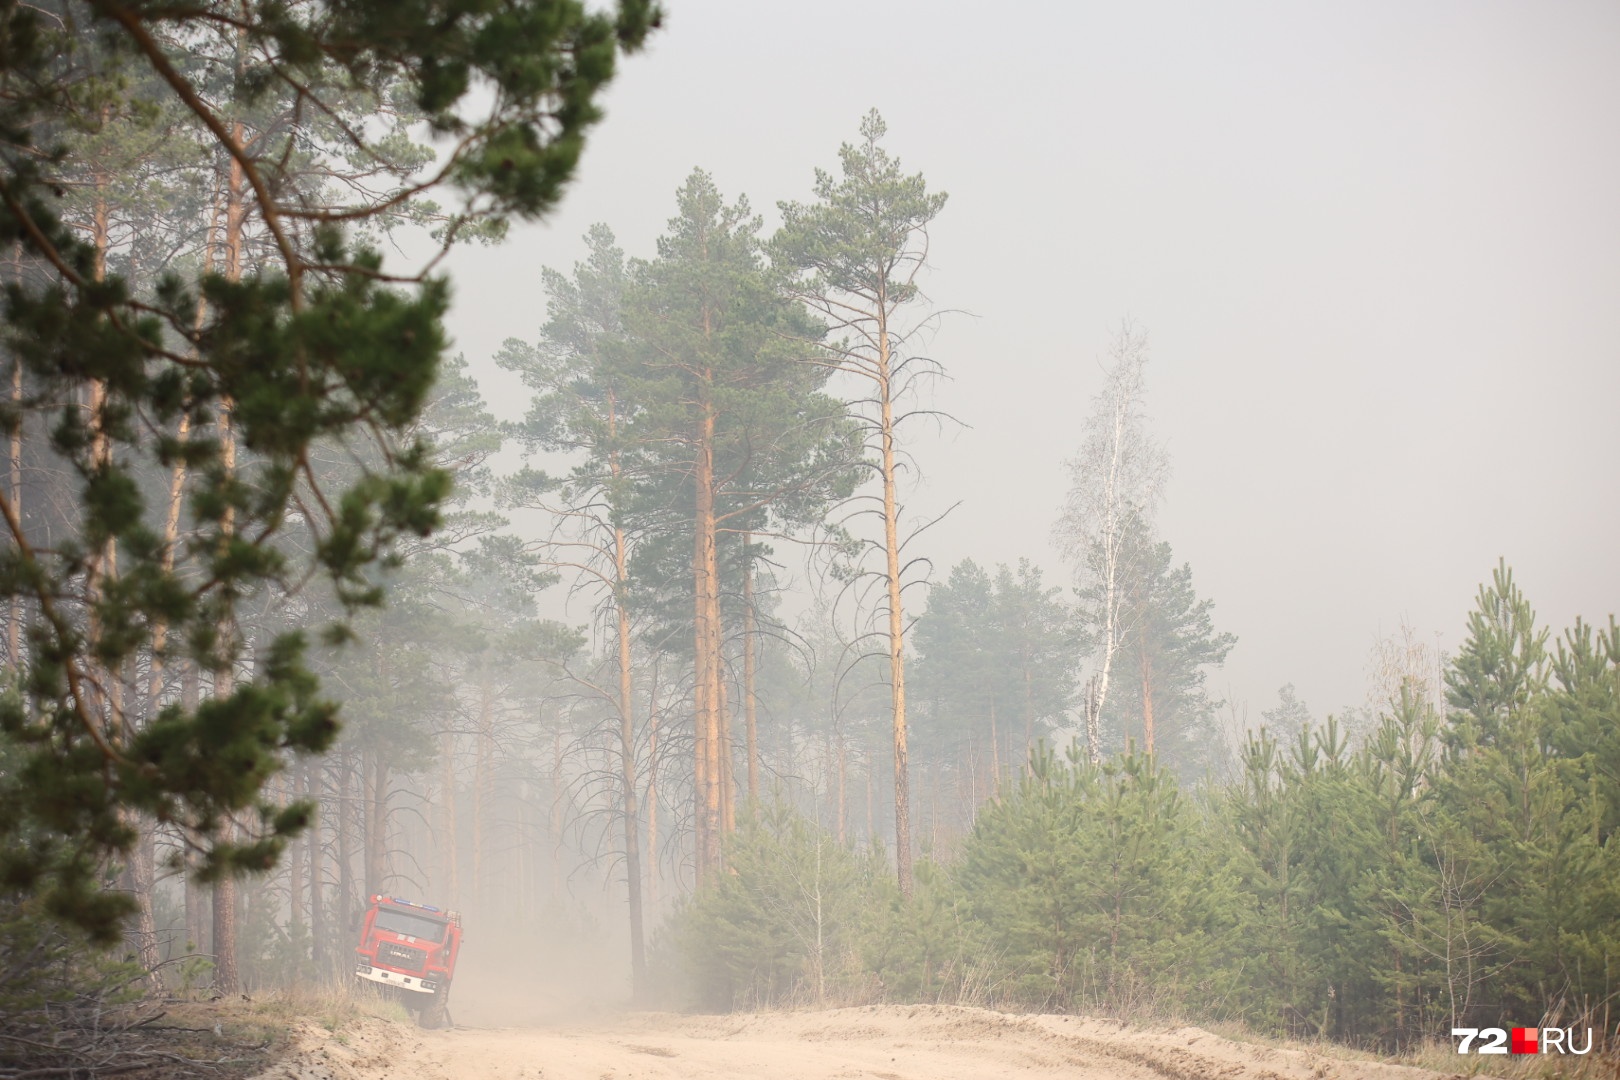 Огонь понесло на восток в сторону Боровского, который в 7 километрах. Пожарные уверены, что смогут справиться с возгоранием